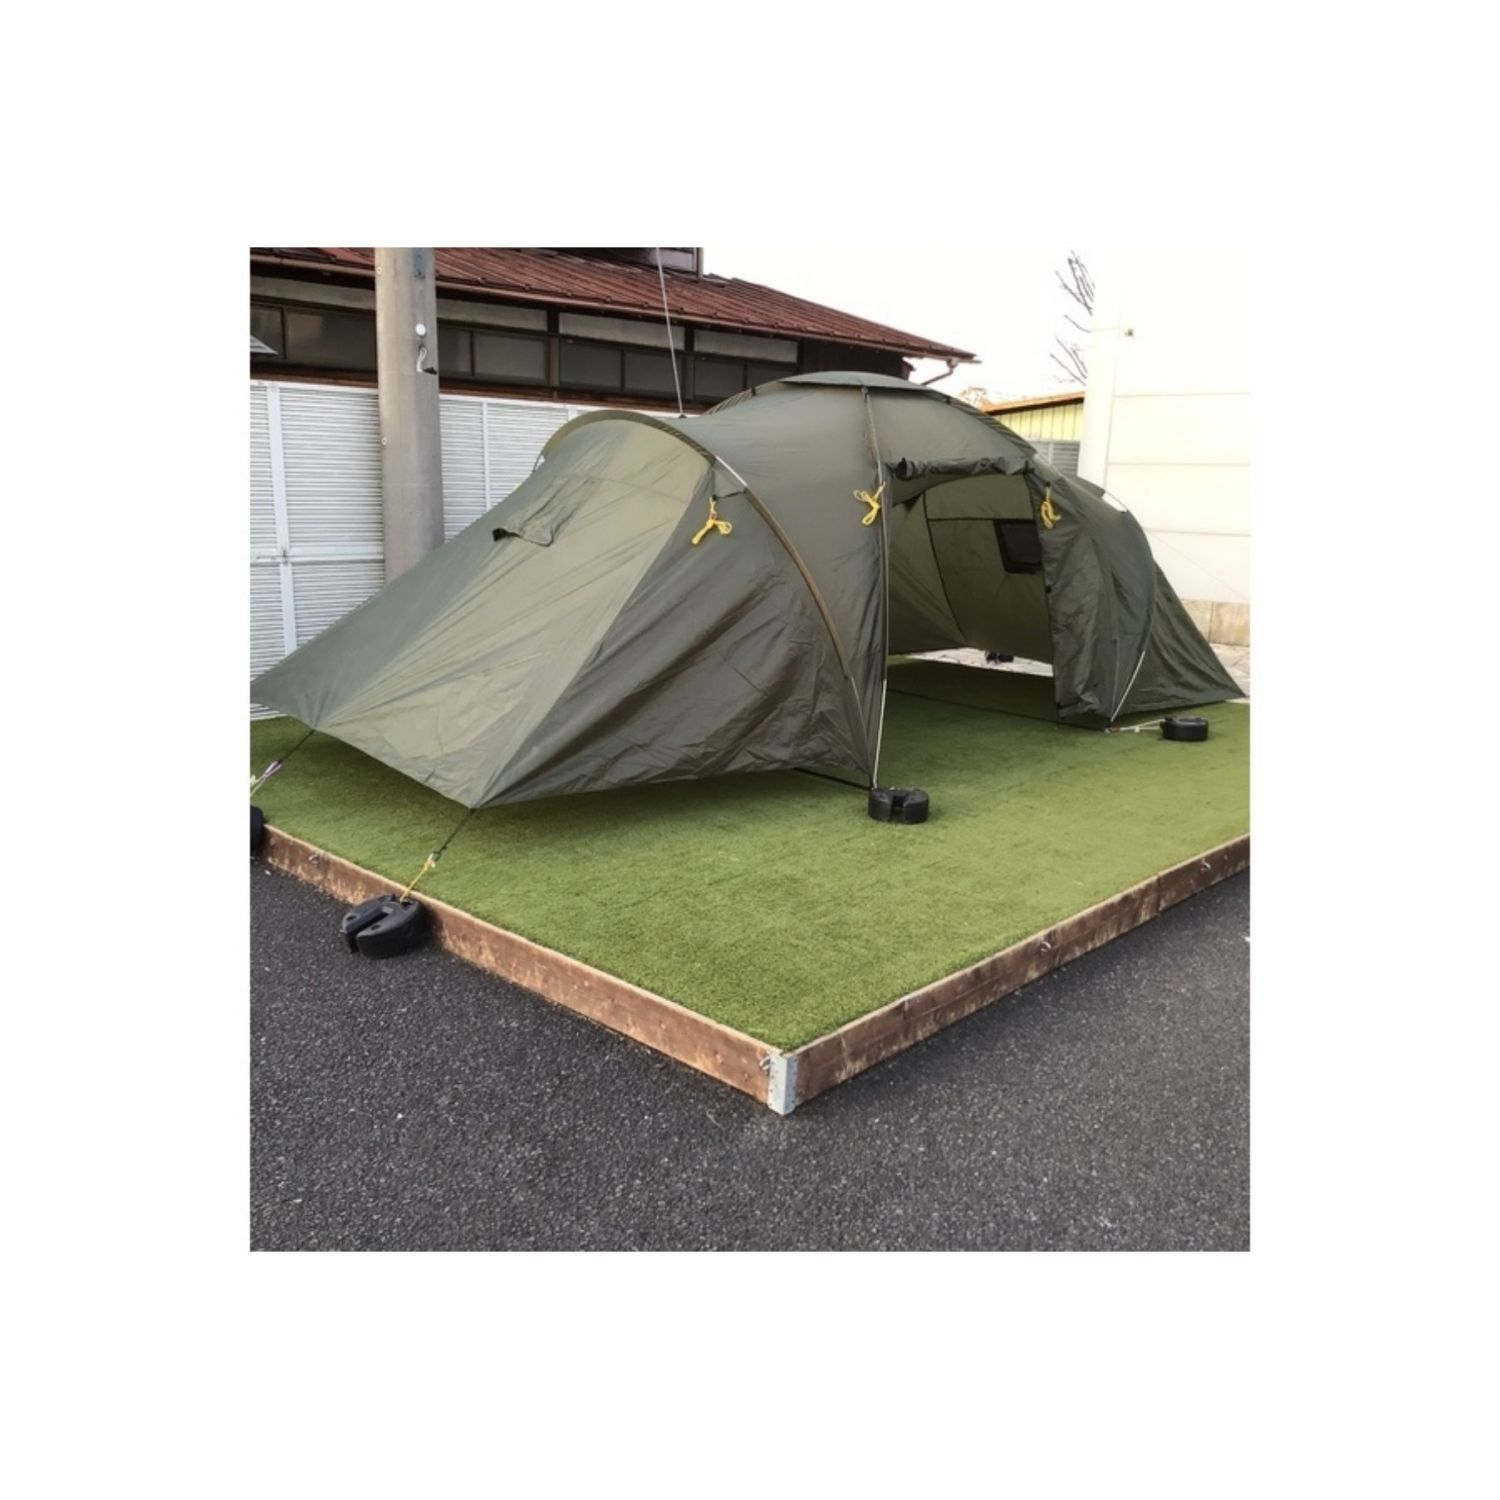 75％以上節約 ニッチ リッチ キャッチスノーピーク ゼッカ スターターセット テント ロッジドーム型テント キャンプ用品